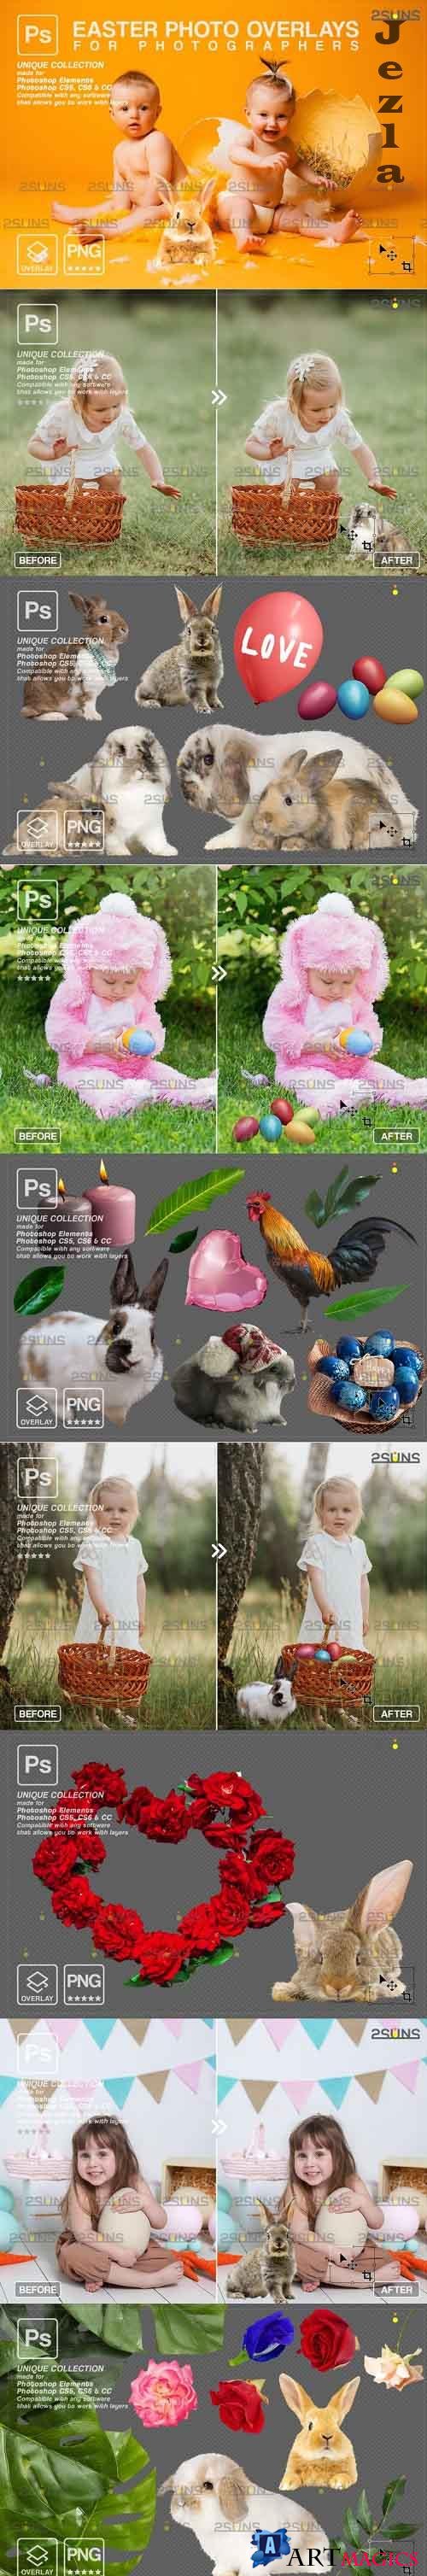 Photoshop overlay Easter bunny overlay - 1222129